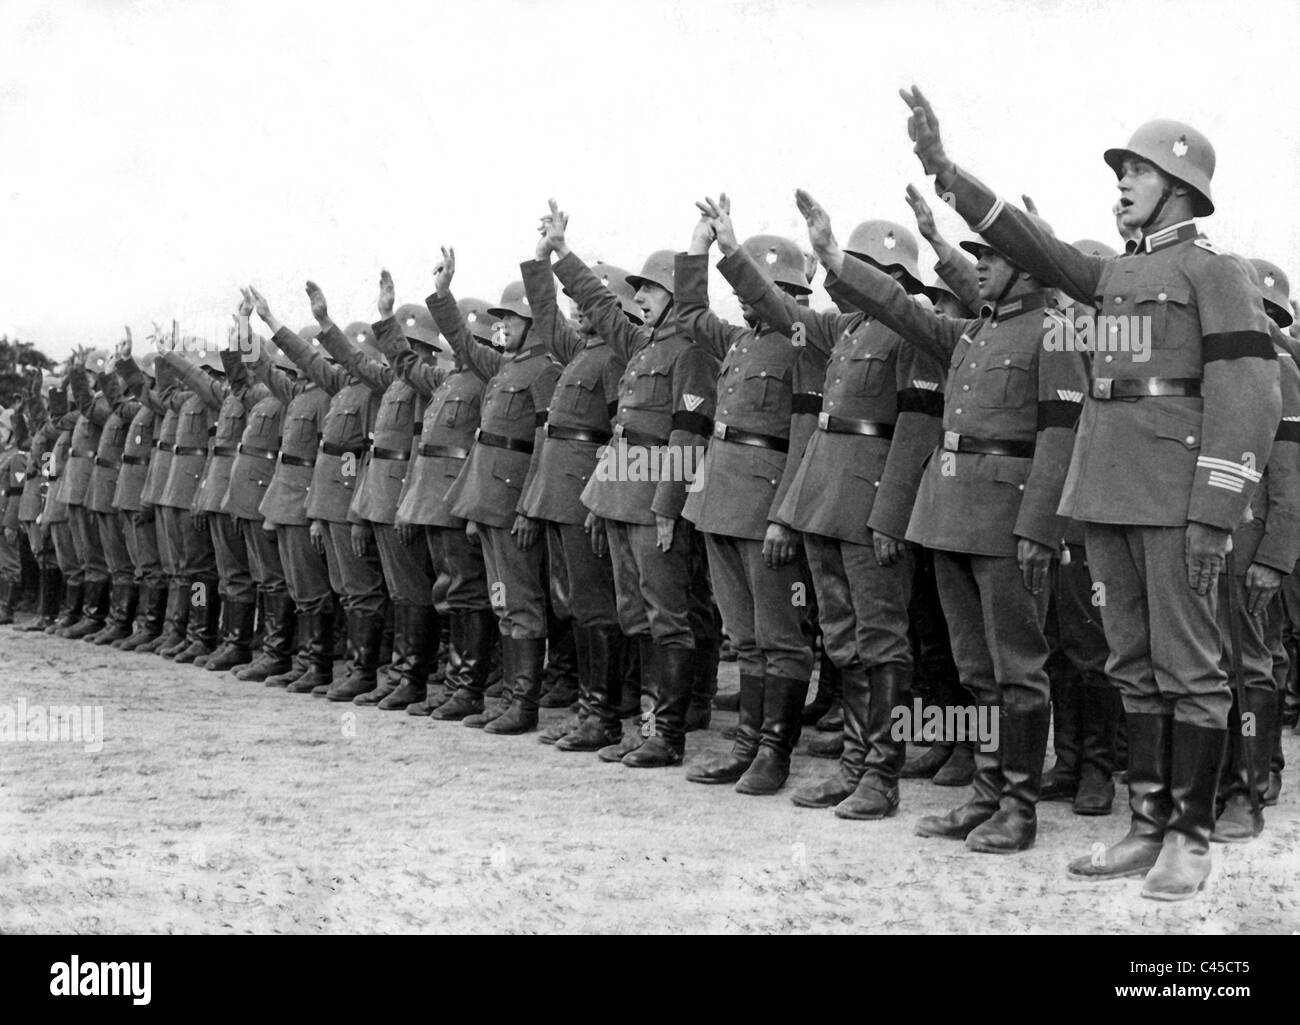 Reichswehr get's sworn in on Hitler's person Stock Photo